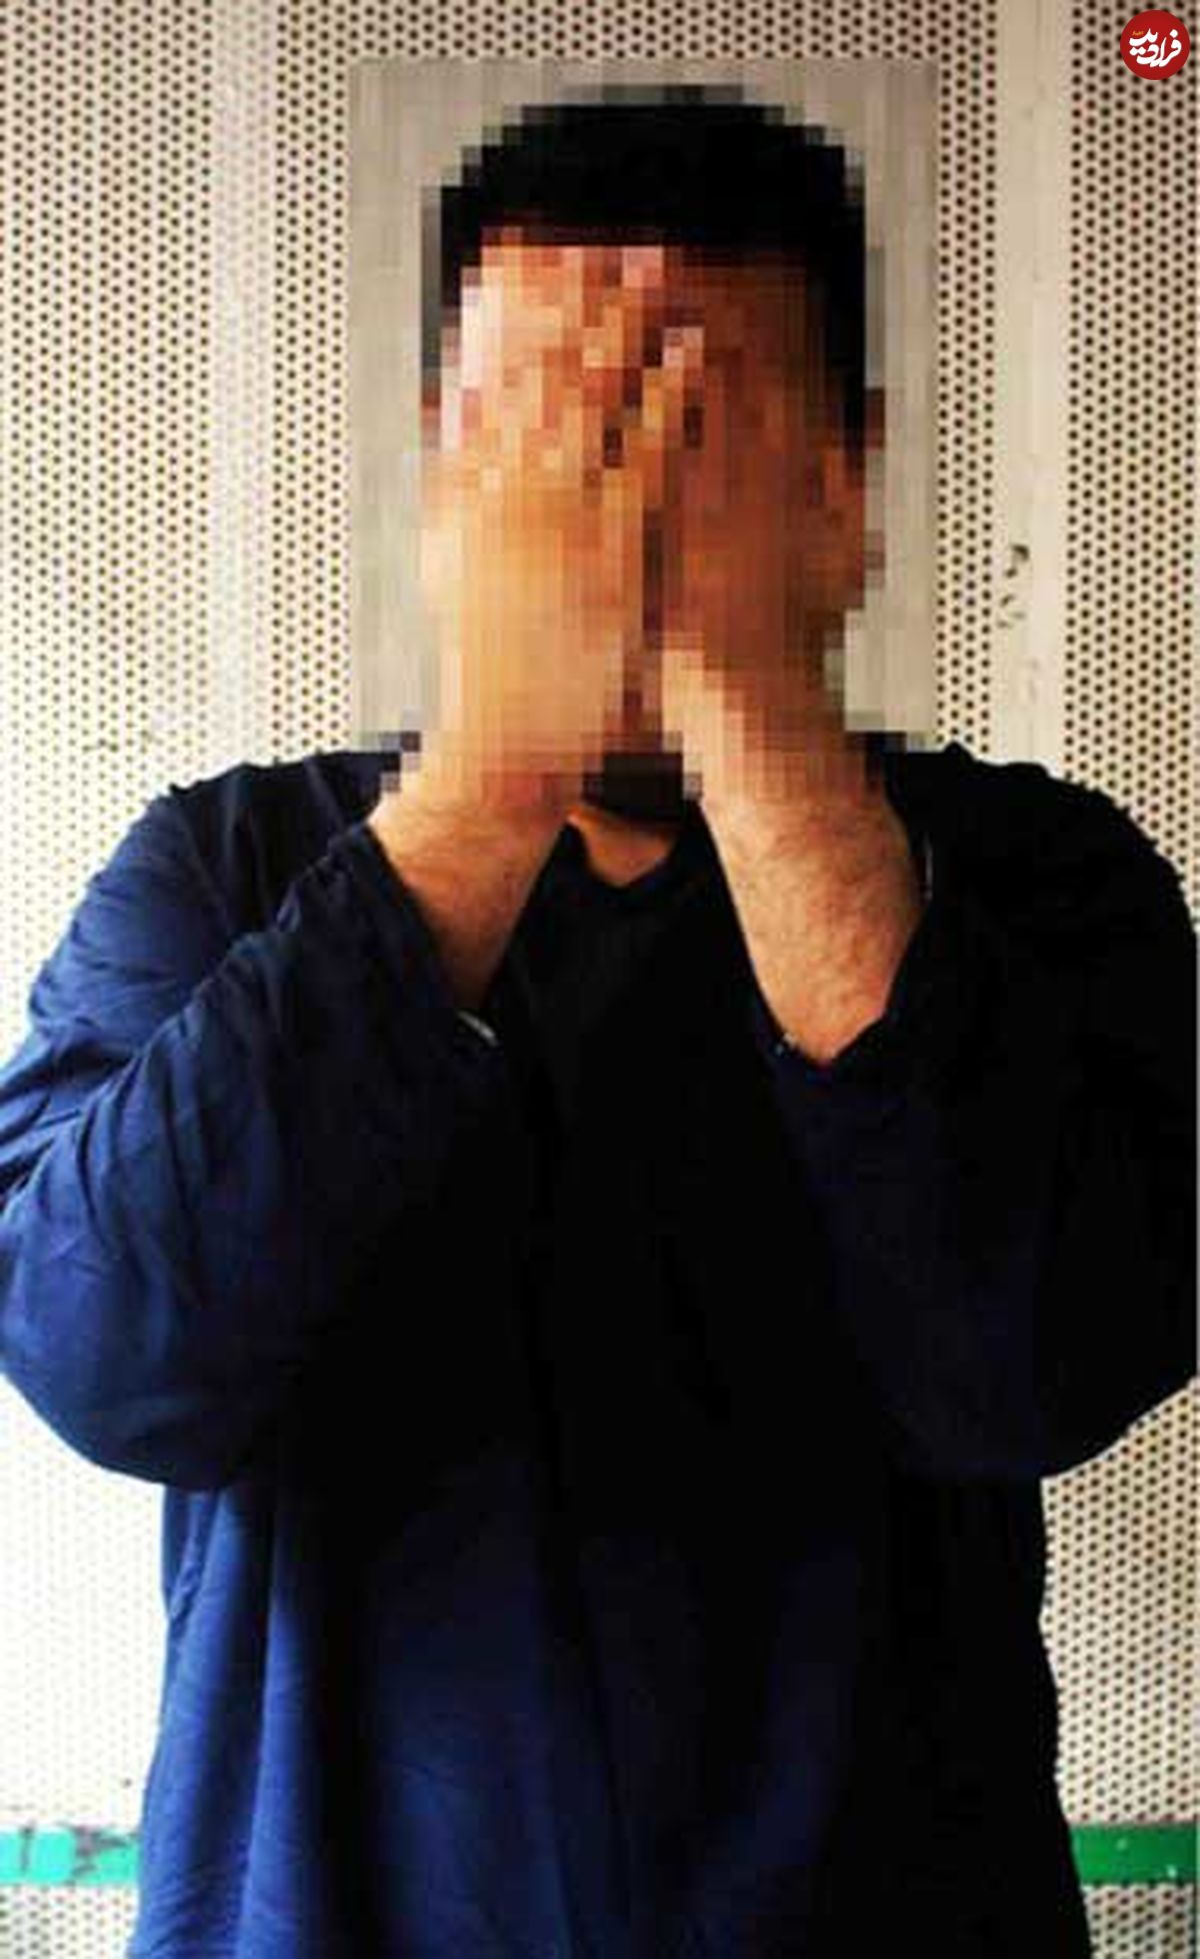 قتل دوست صمیمی برای انتشار عکس